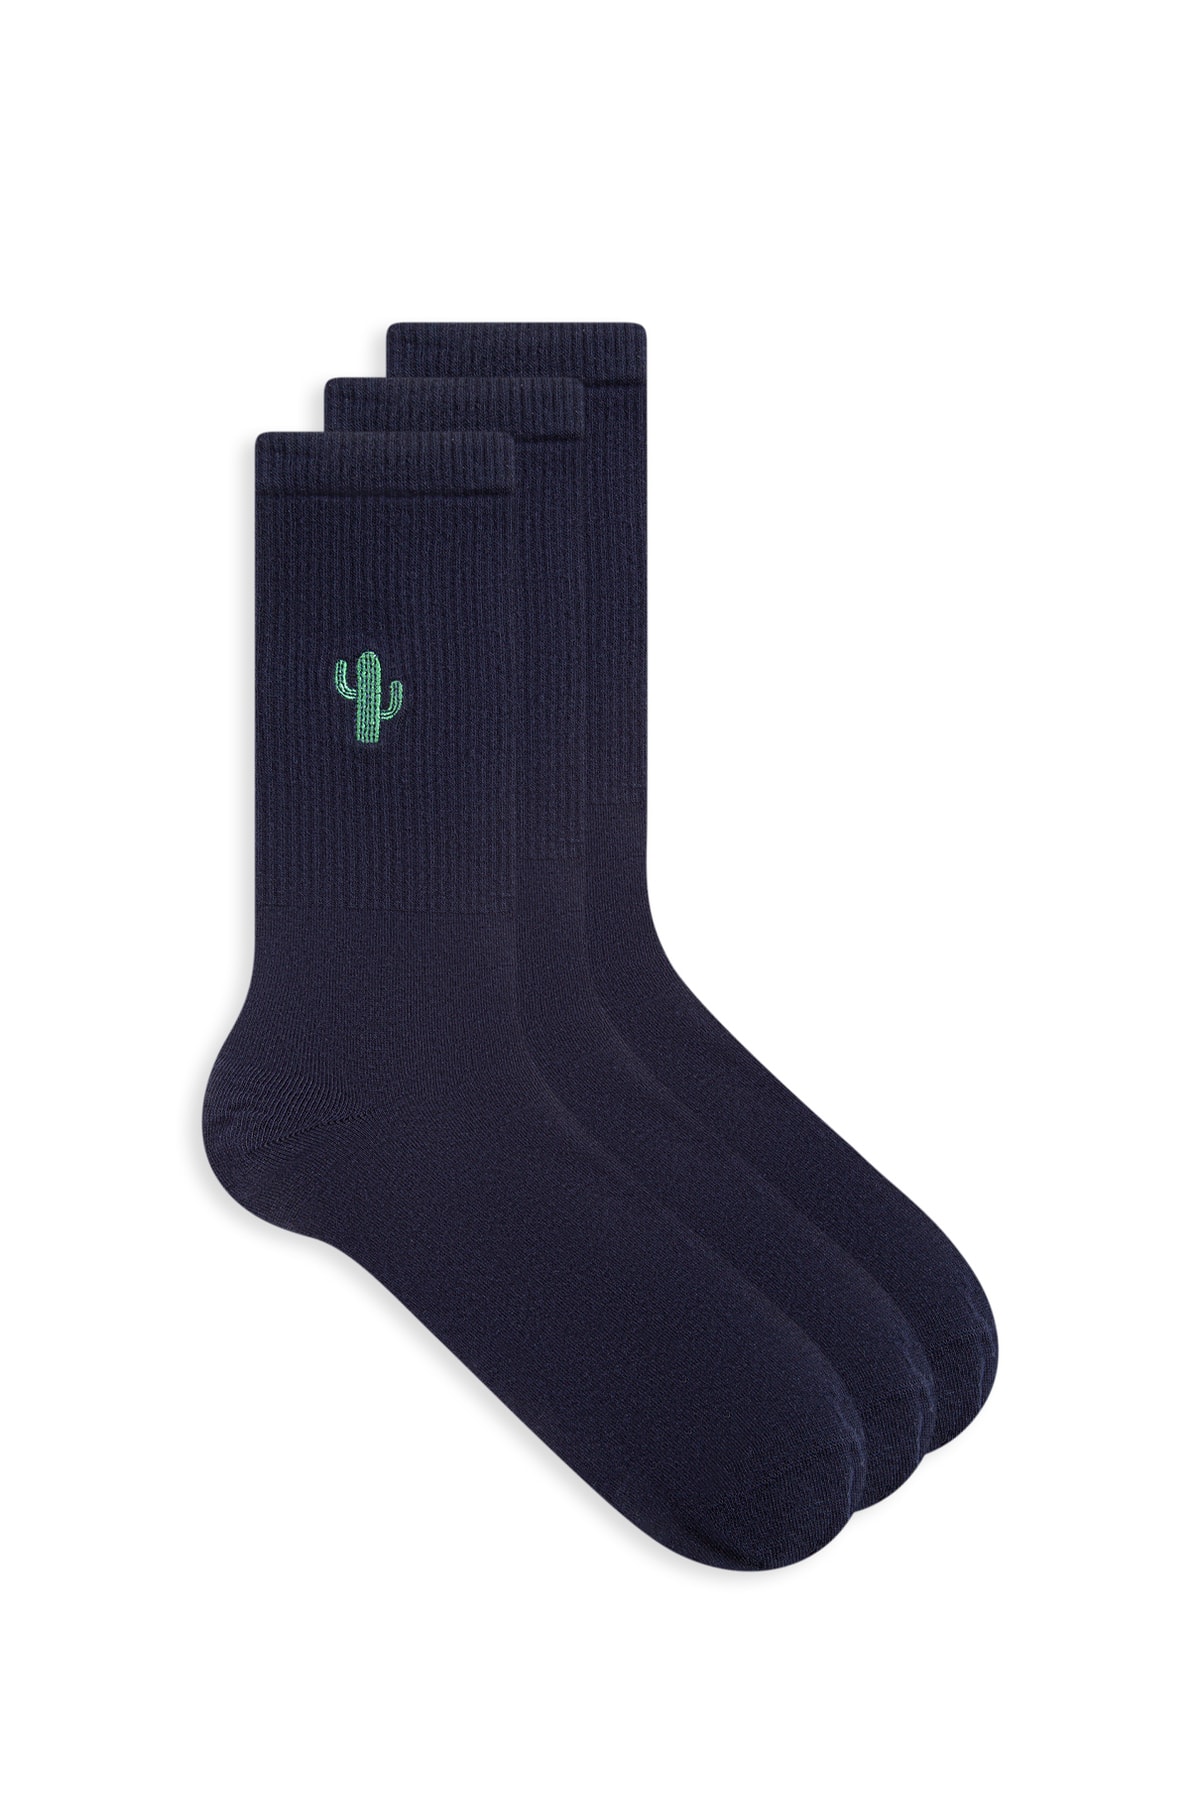 Mavi 3lü Erkek Soket Çorap 0910858-70500